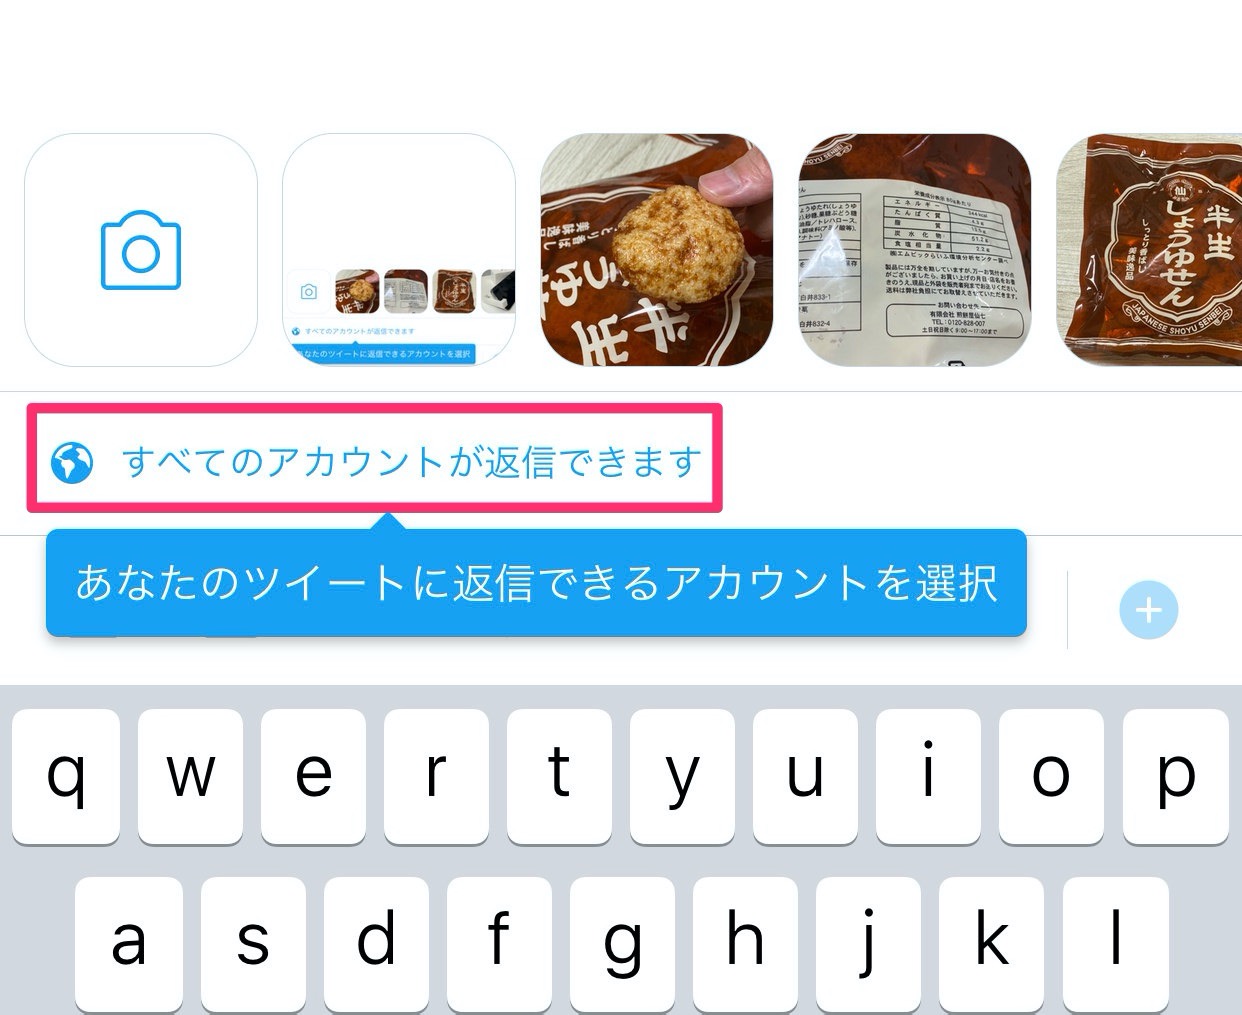 【Twitter】正式リリースされていた「ツイートに返信できるユーザーを選択する機能」がやってきた